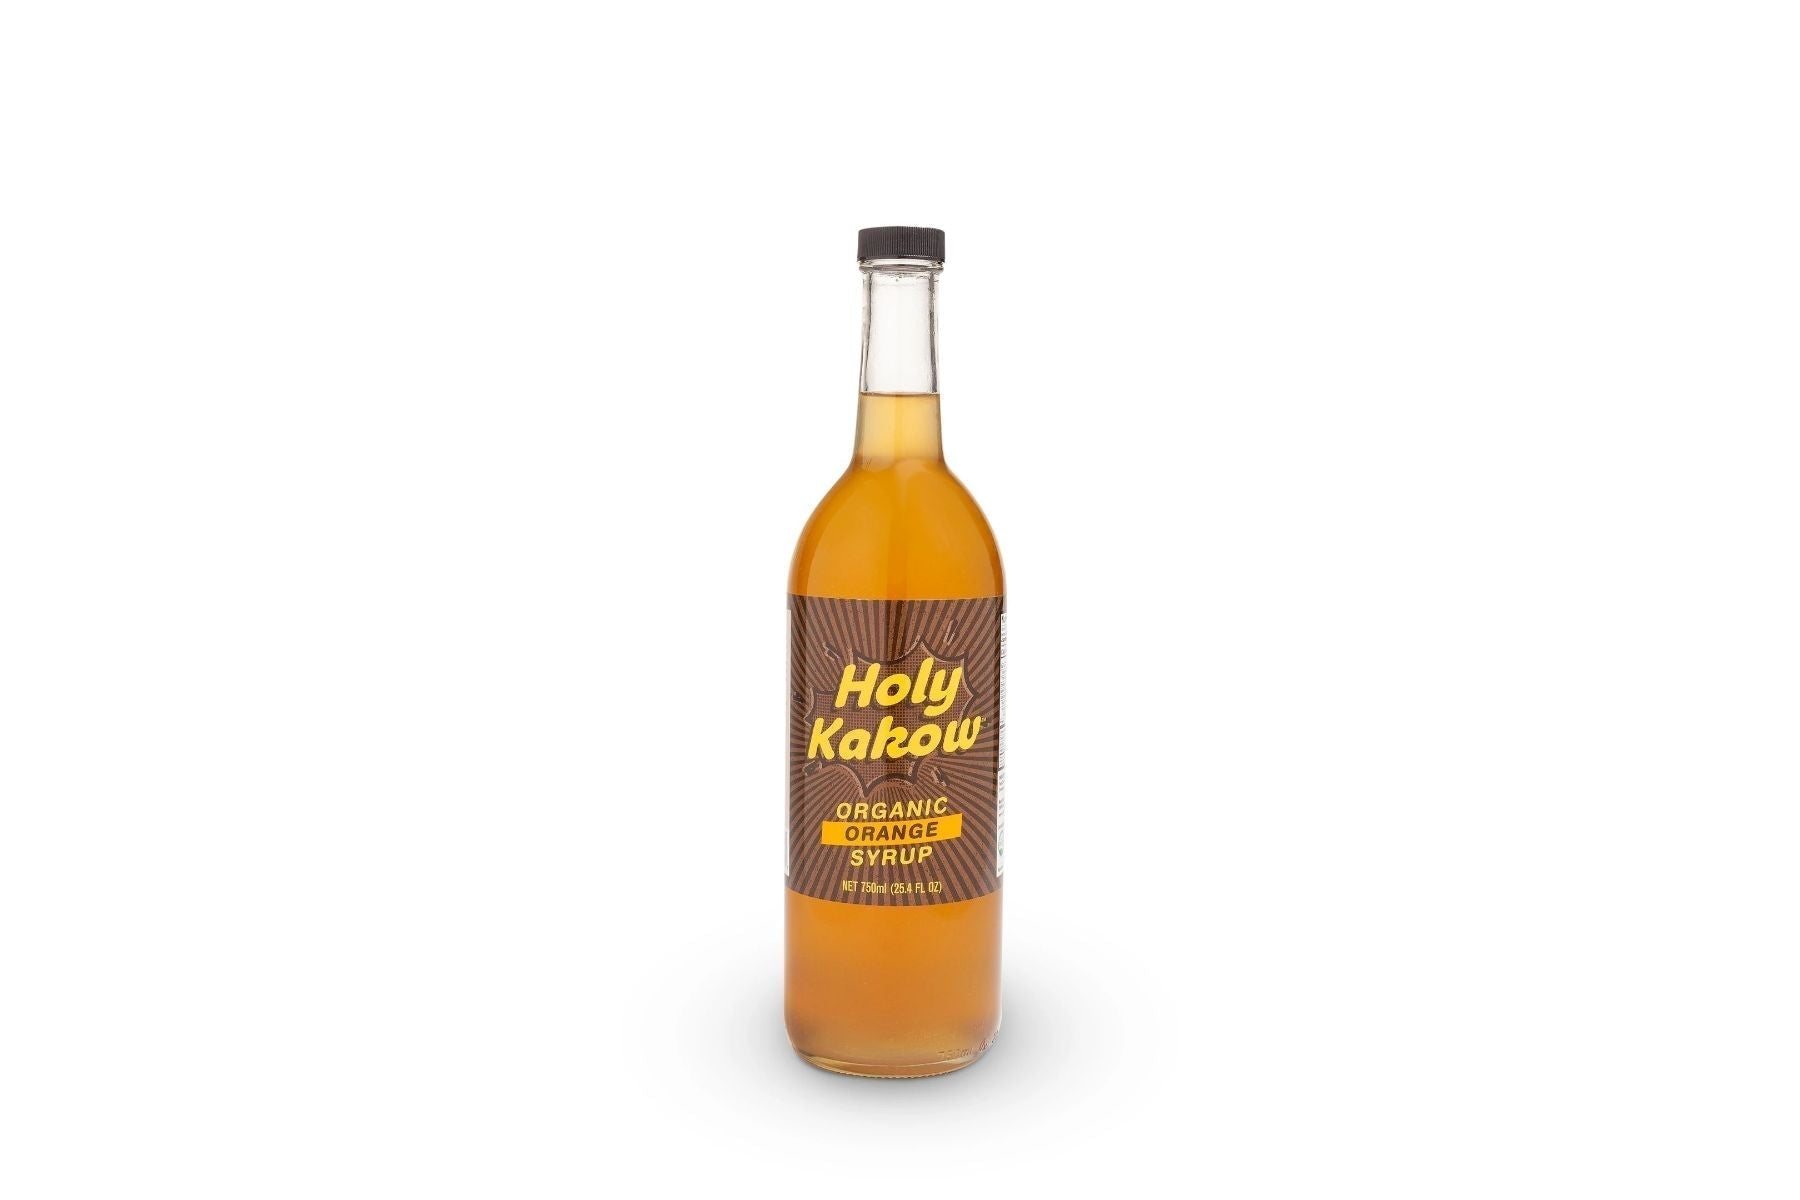 Holy Kakow - 750ml Syrup Bottle: Organic Orange